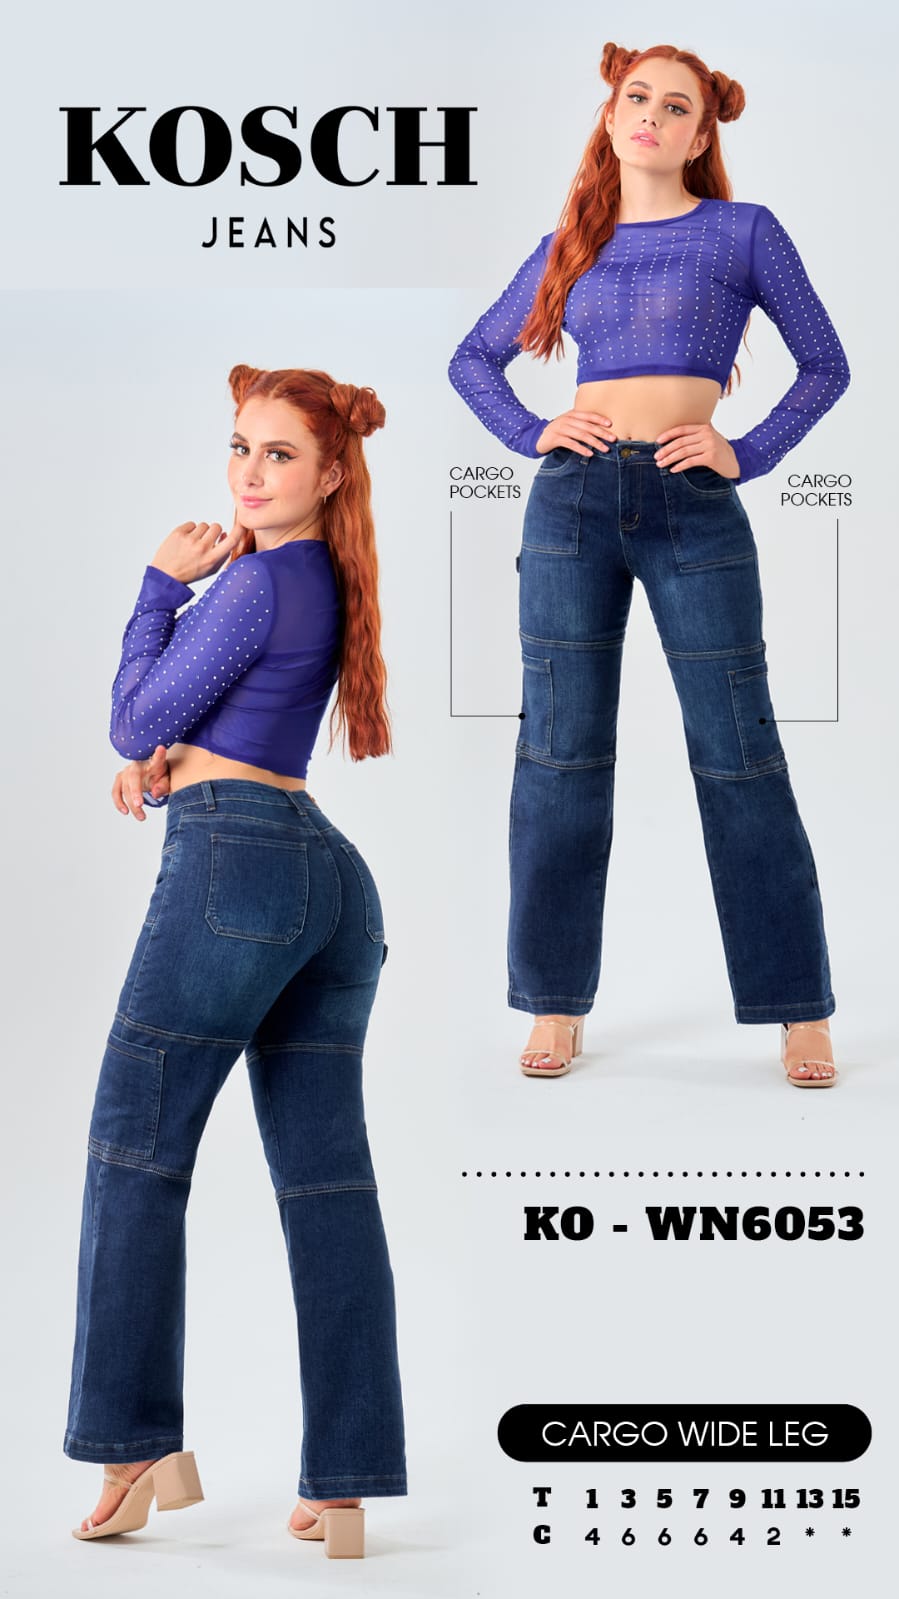 Kosch jeans marine cargo KO 6053